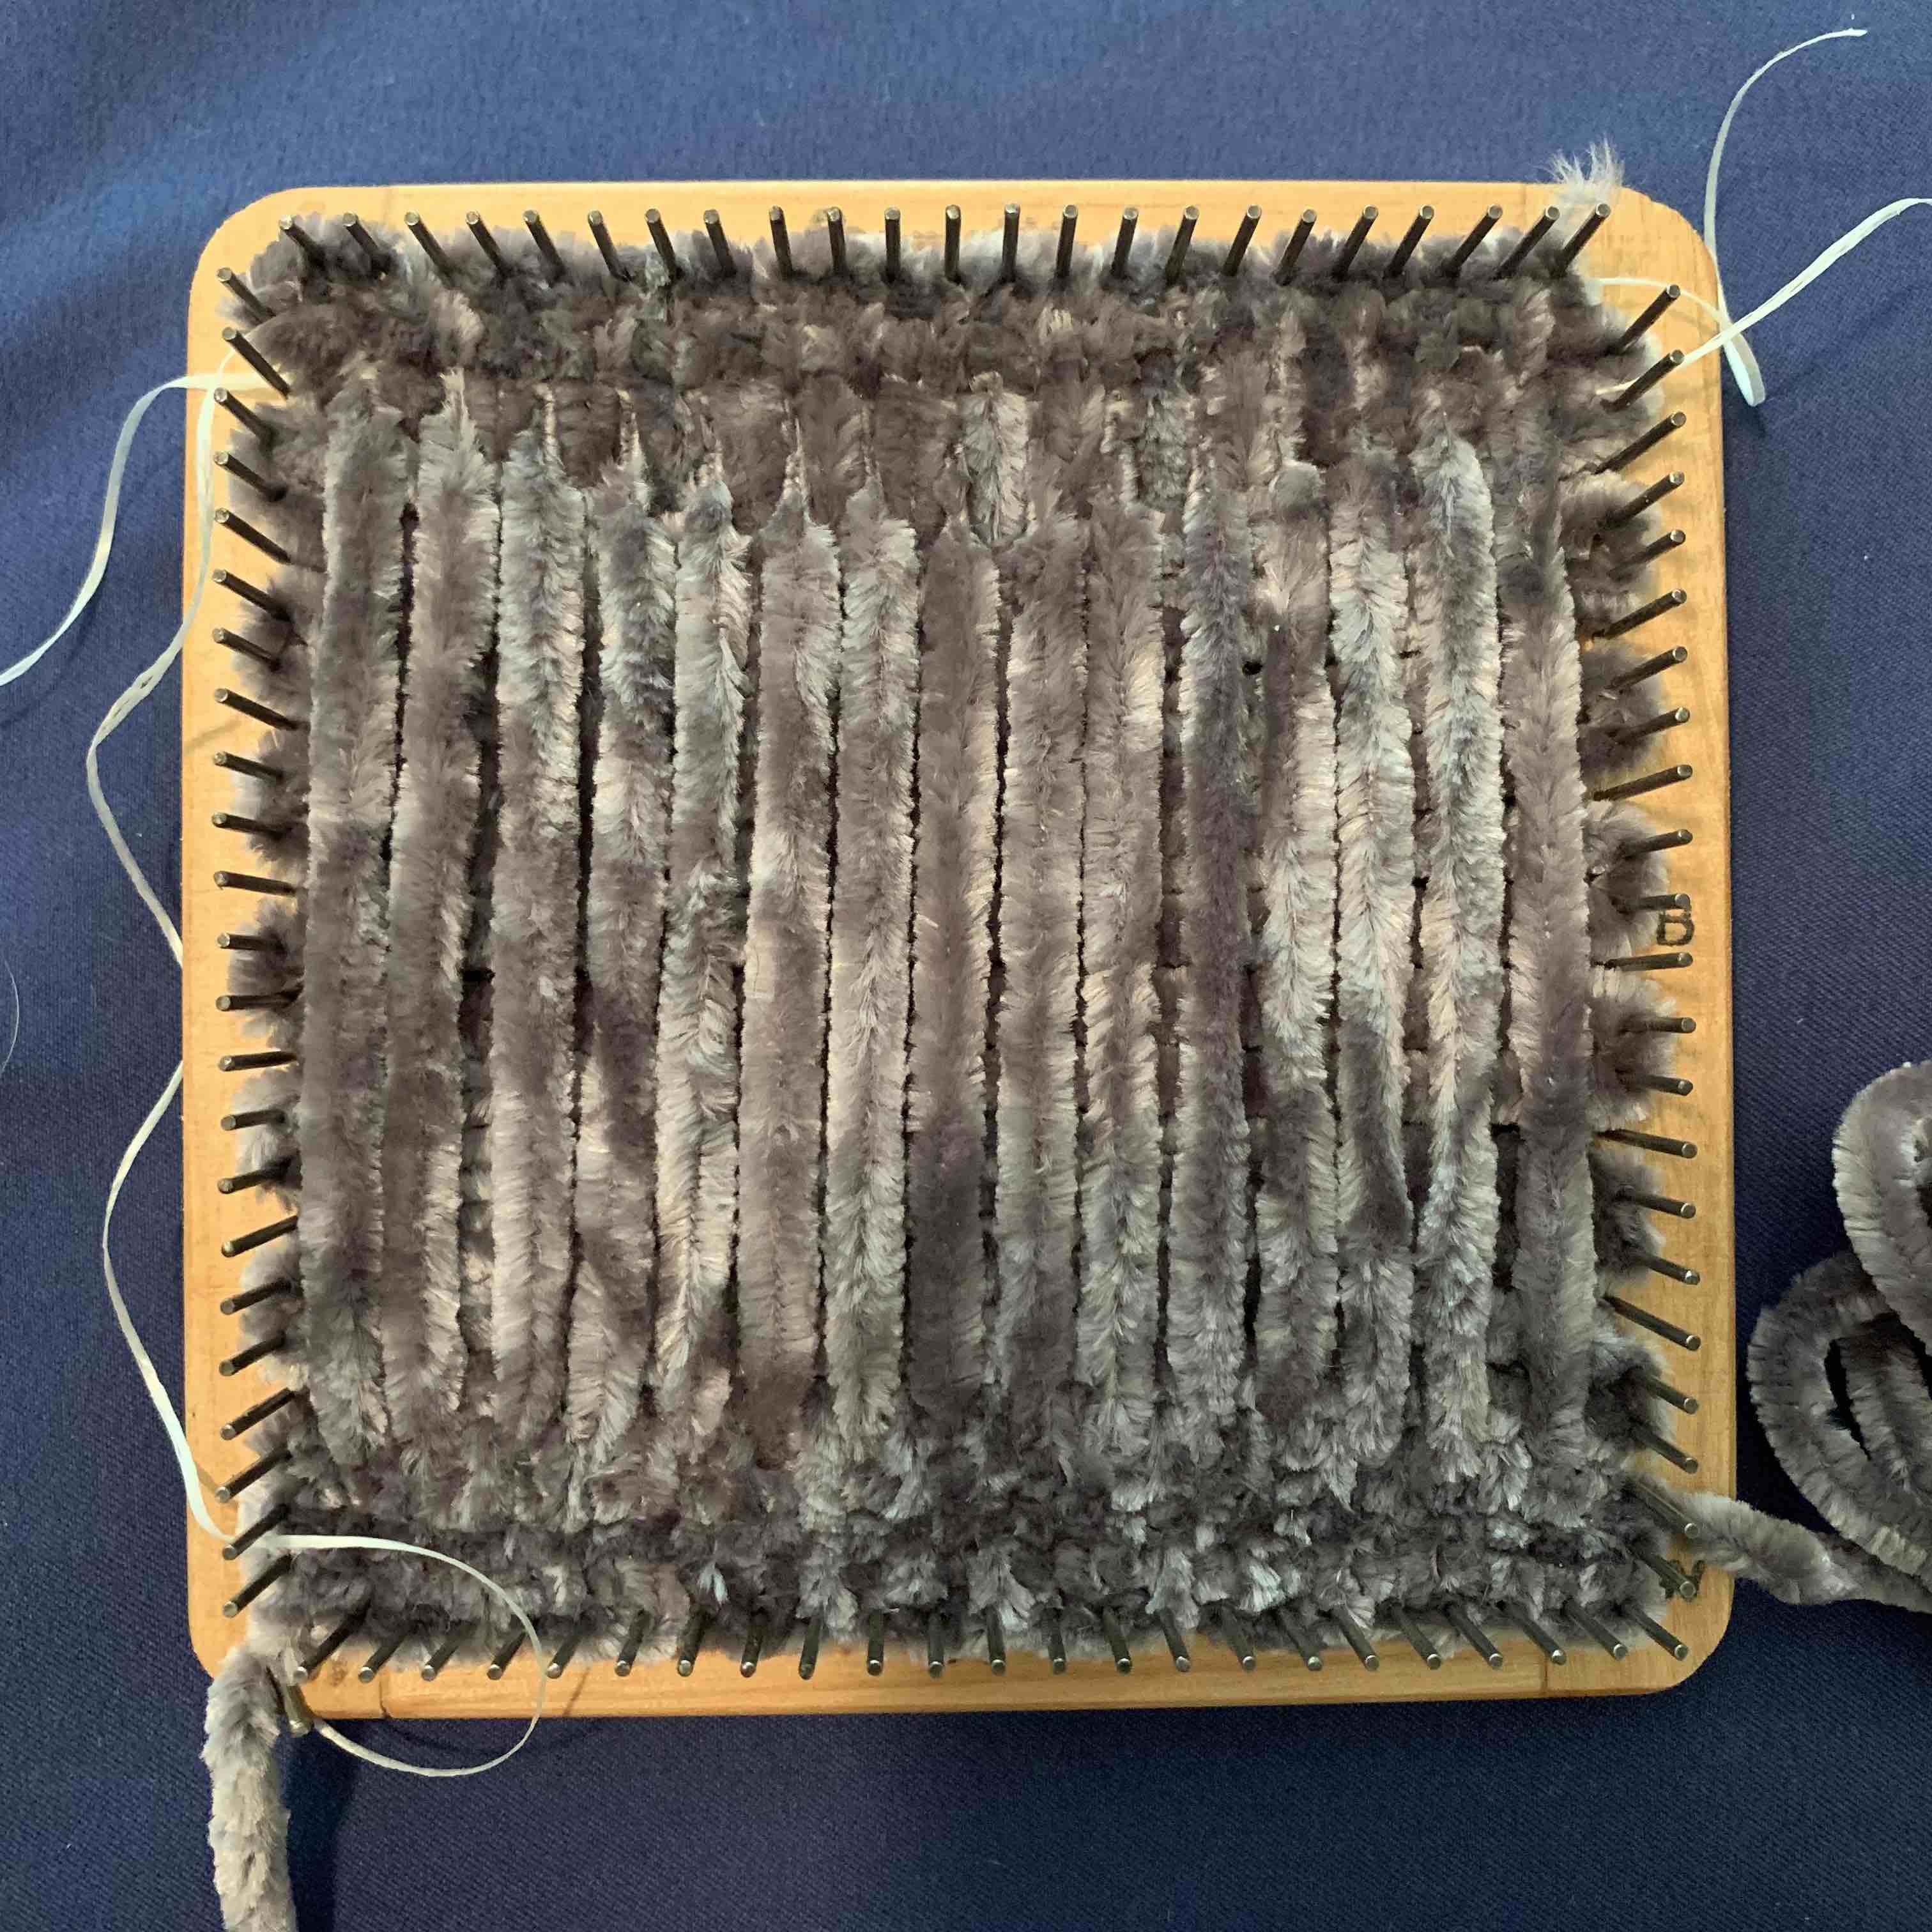 Weaving dental floss in pin loom